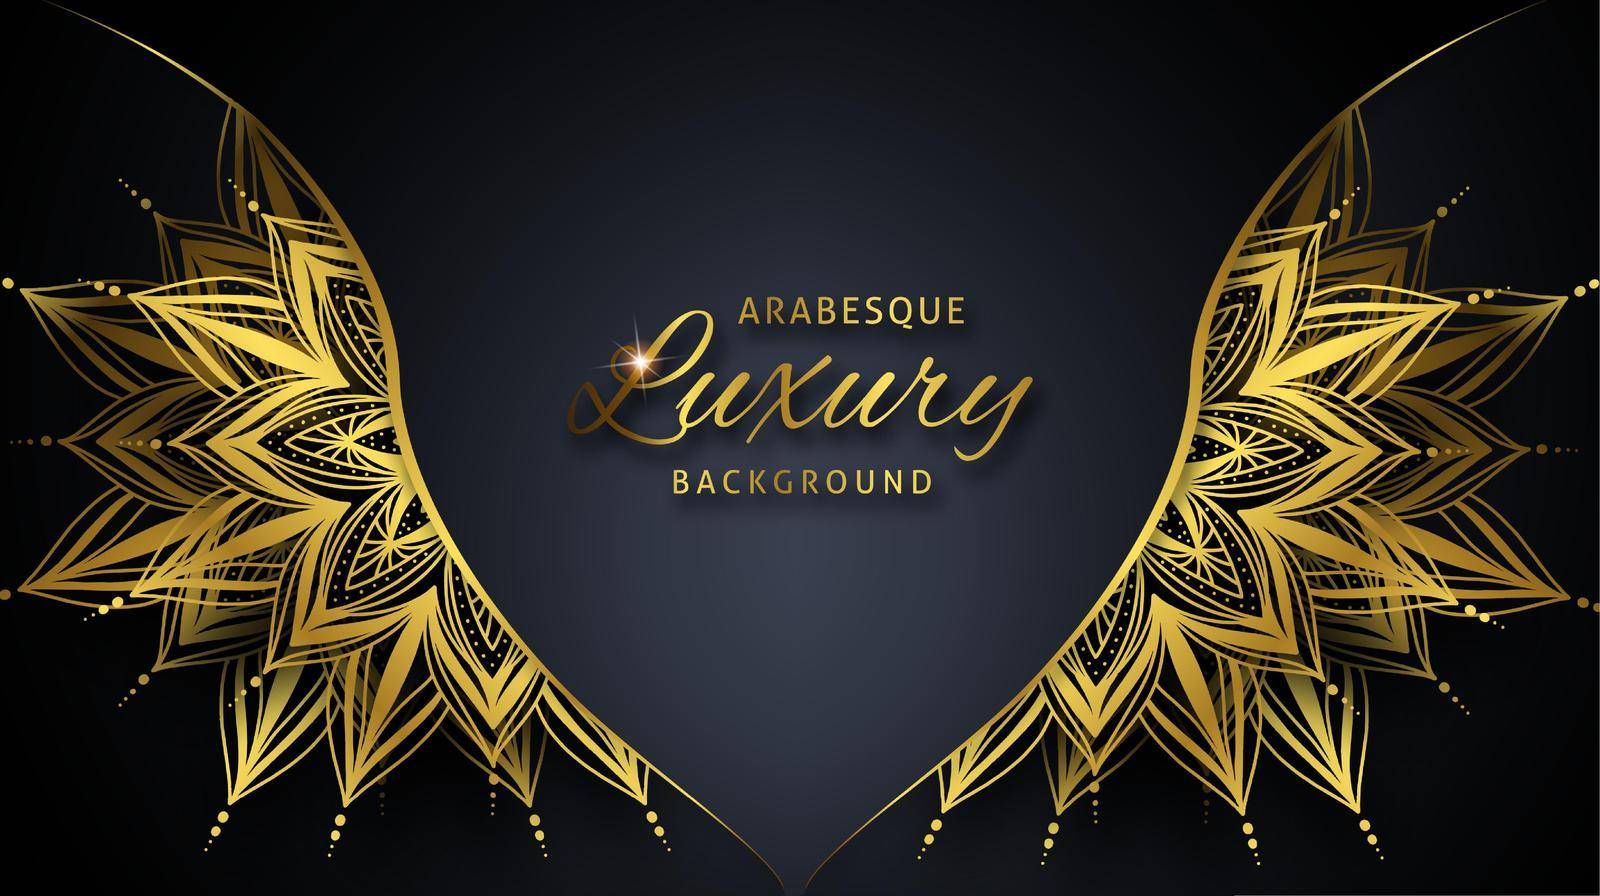 Arabesque Luxury background with gold mandala